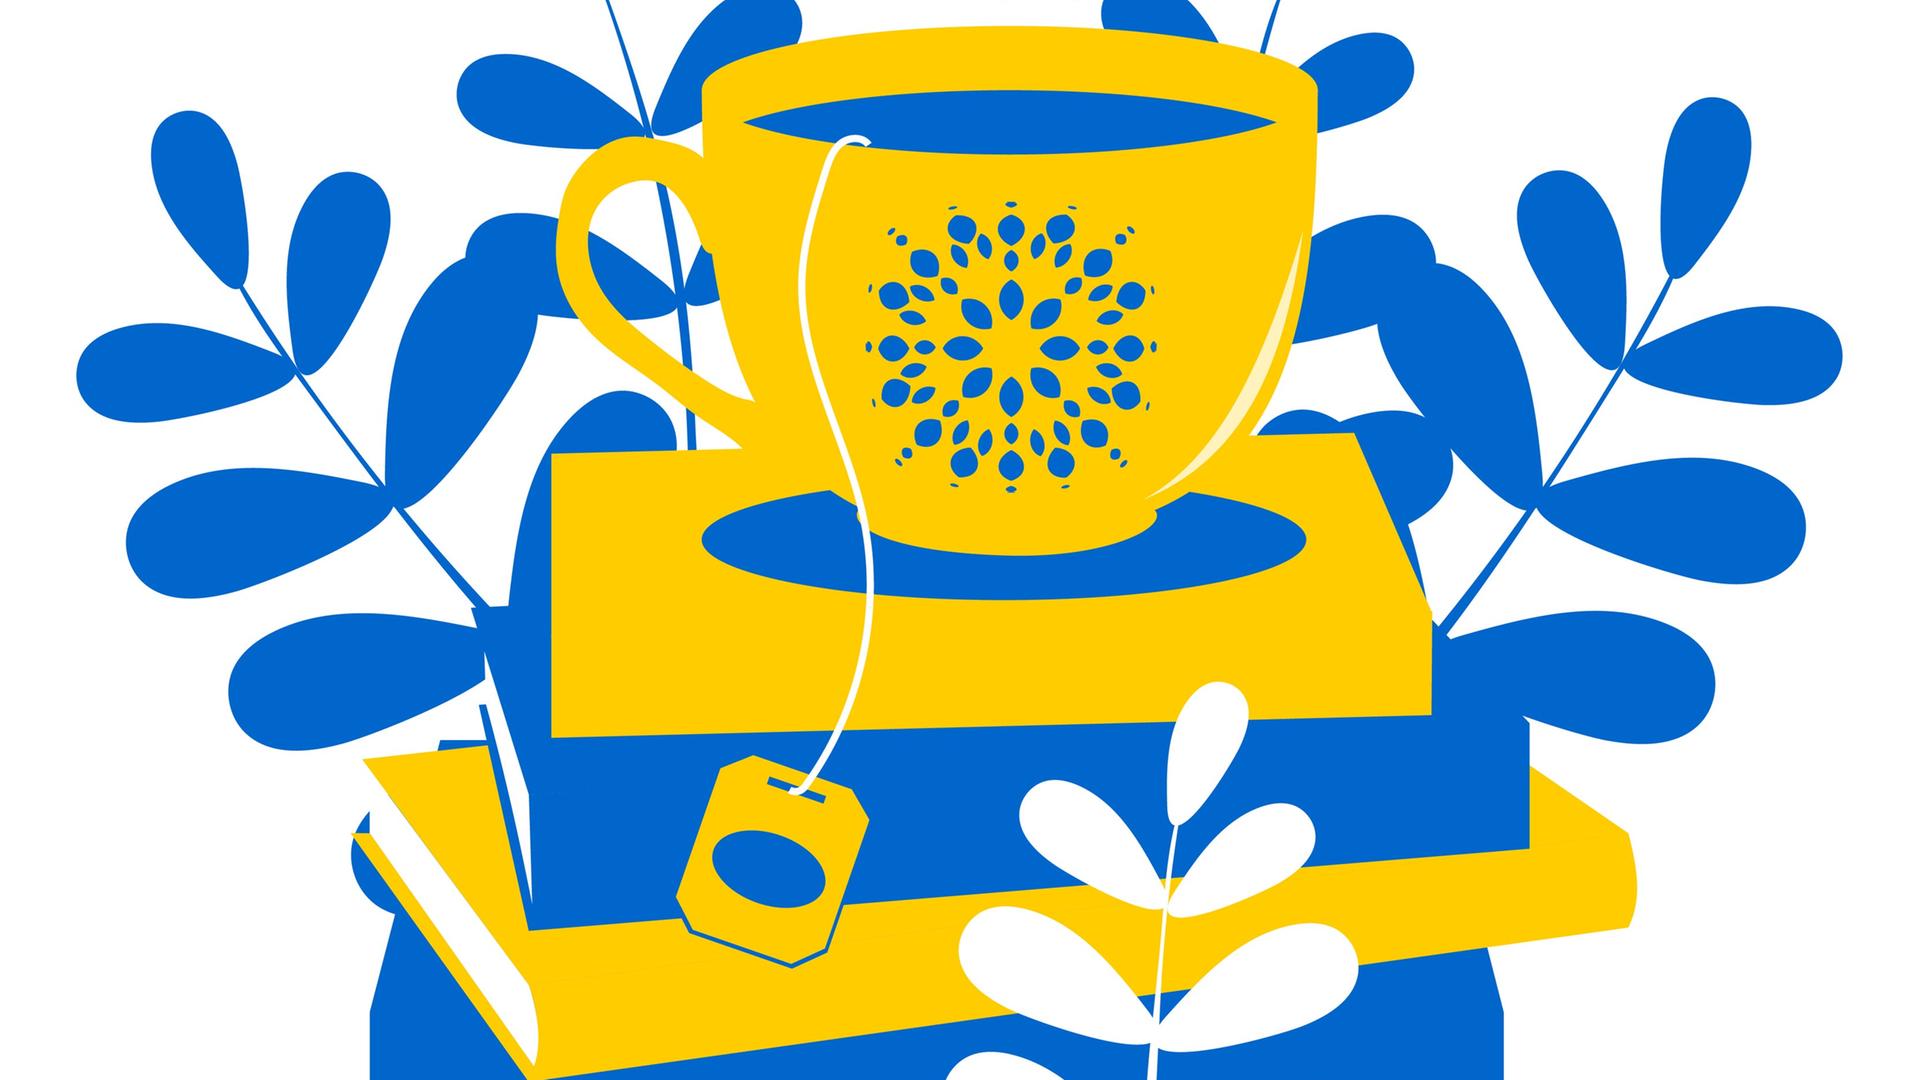 Lesezeit! Das soll diese Illustration aussagen. Auf einem Stapel Bücher steht eine gelbe Teetasse mit blauem Muster. Aus der Tasse hängt ein Faden mit dem Schildchen eines Teebeutels. Der Bücherstapel besteht aus abwechselnd gelben und blauen Büchern. Im Hintergrund sind stilisierte Zweige mit Blättern gesehen. 